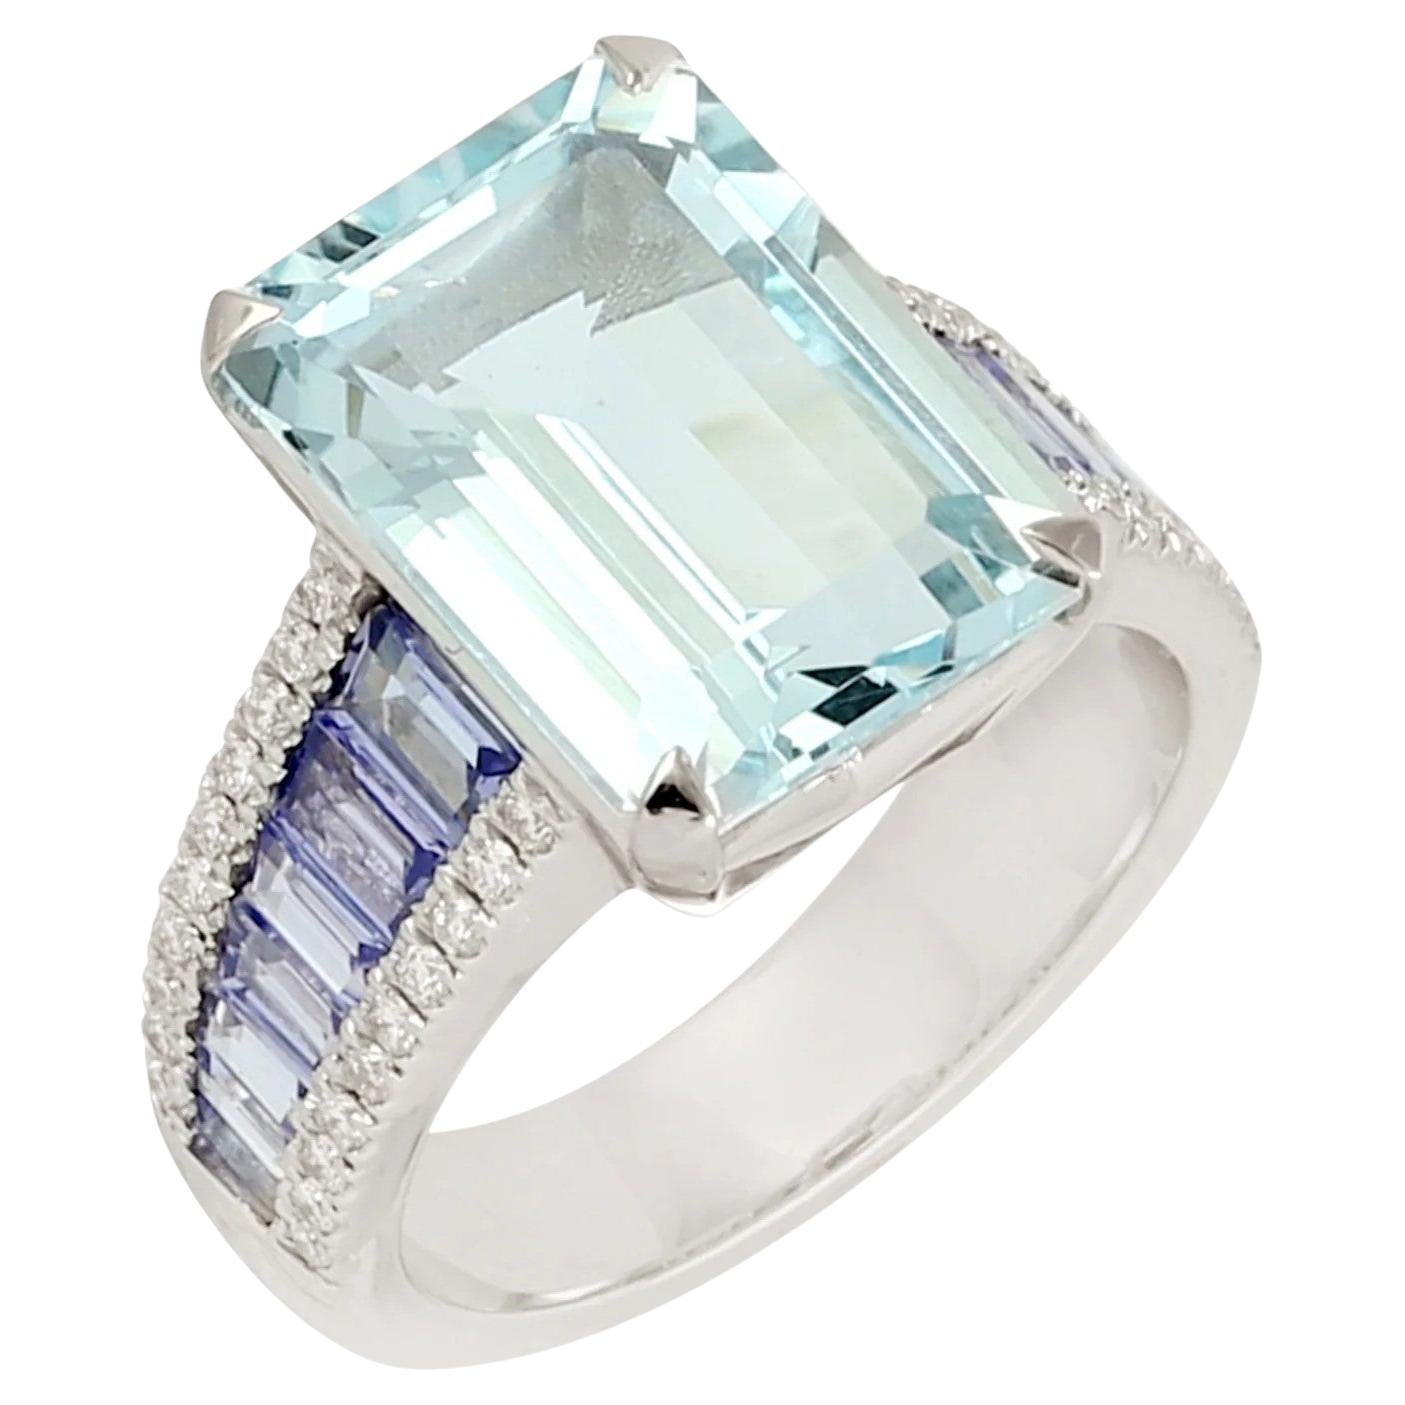  Meghna Jewels Emerald Cut Aquamarine Tanzanite Diamond 14 Karat Gold Ring For Sale